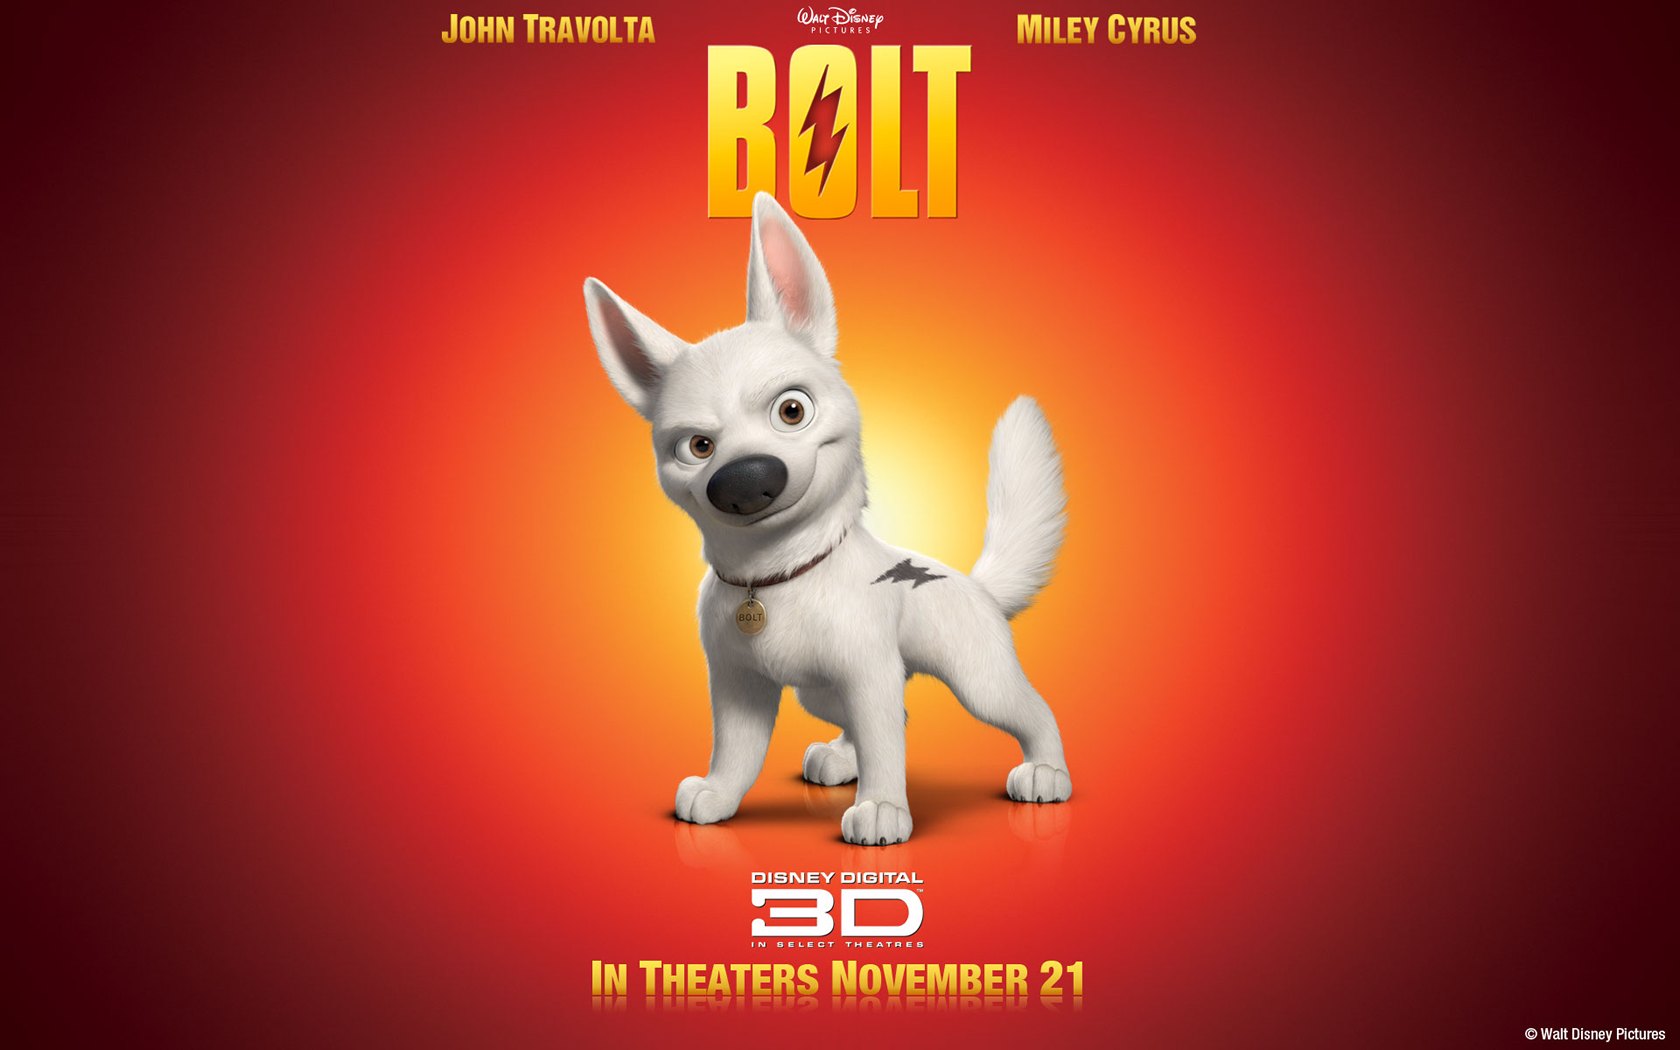 "Bolt" desktop wallpaper number 1 (1680 x 1050 pixels)